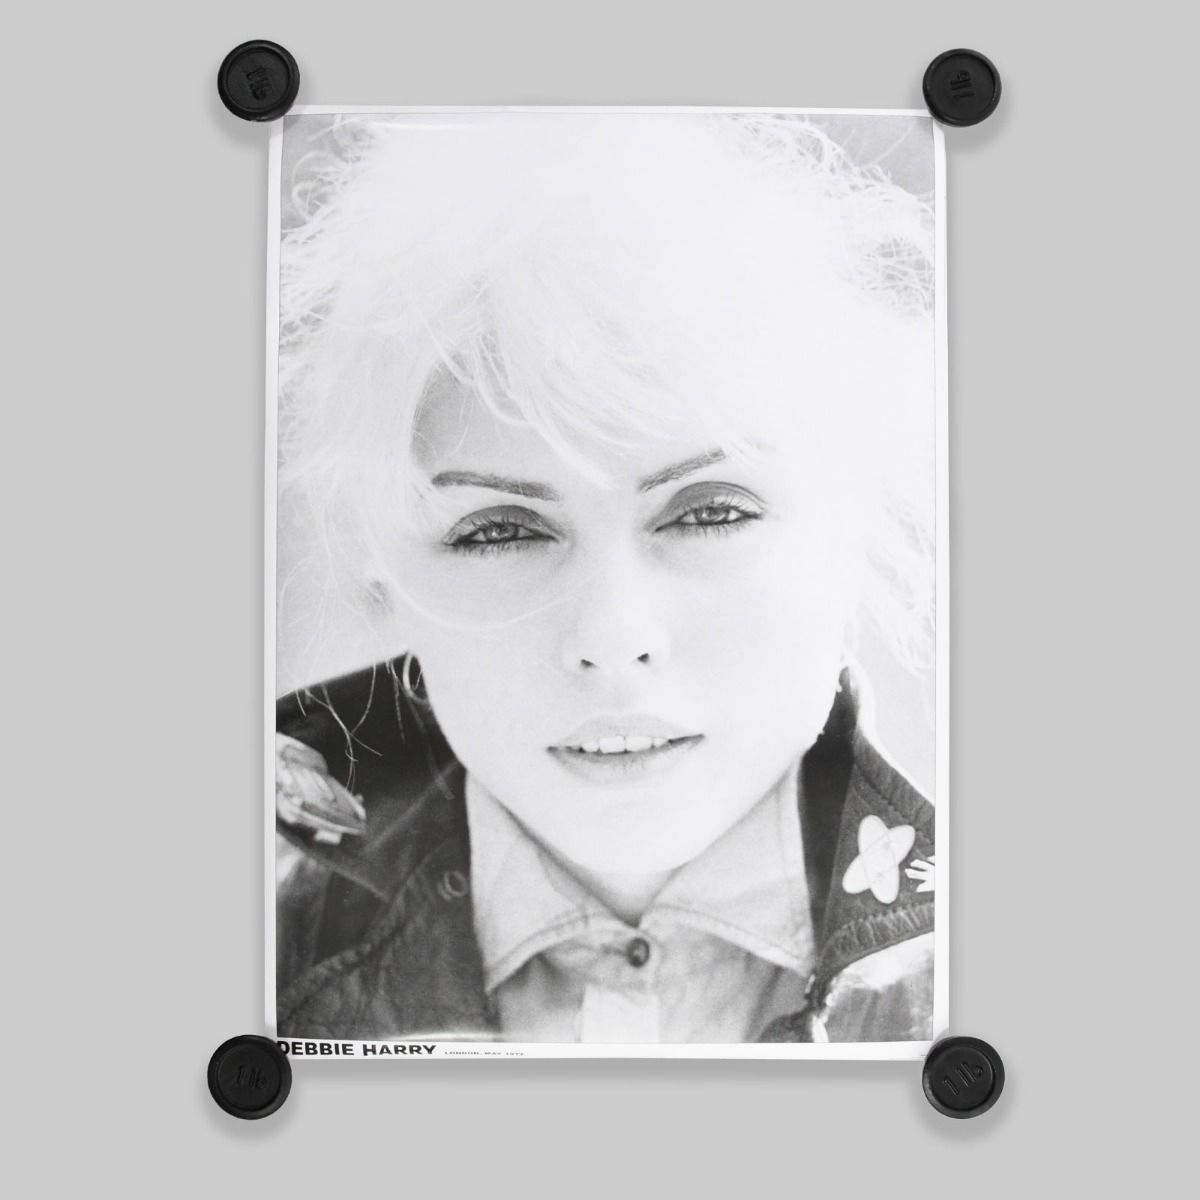 Blondie Debbie Harry Poster A1